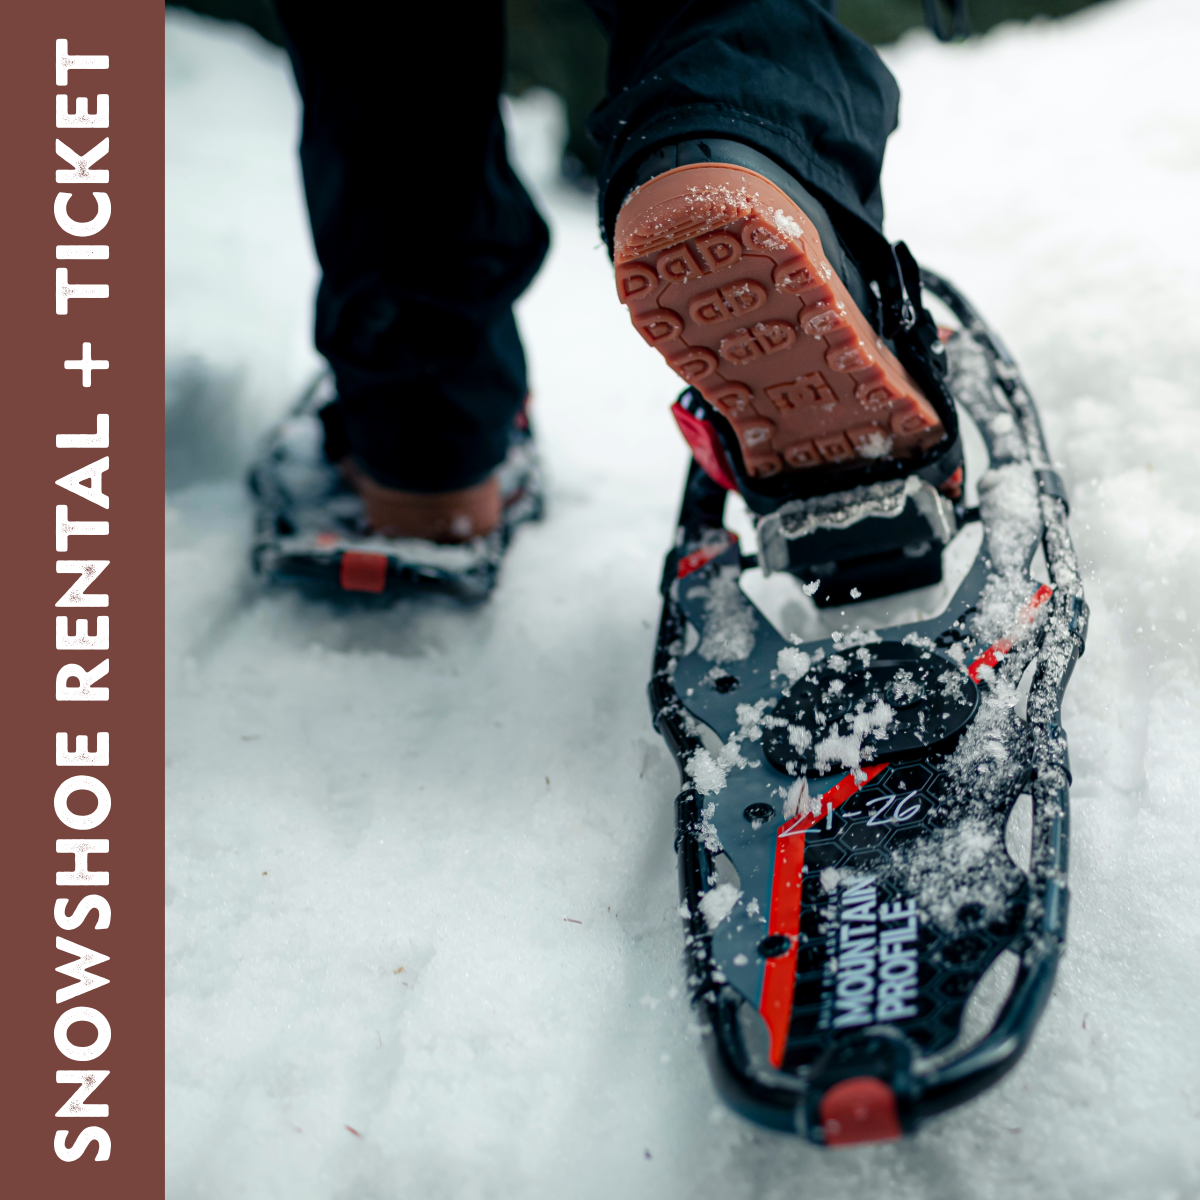 Snowshoe Rental & Ticket